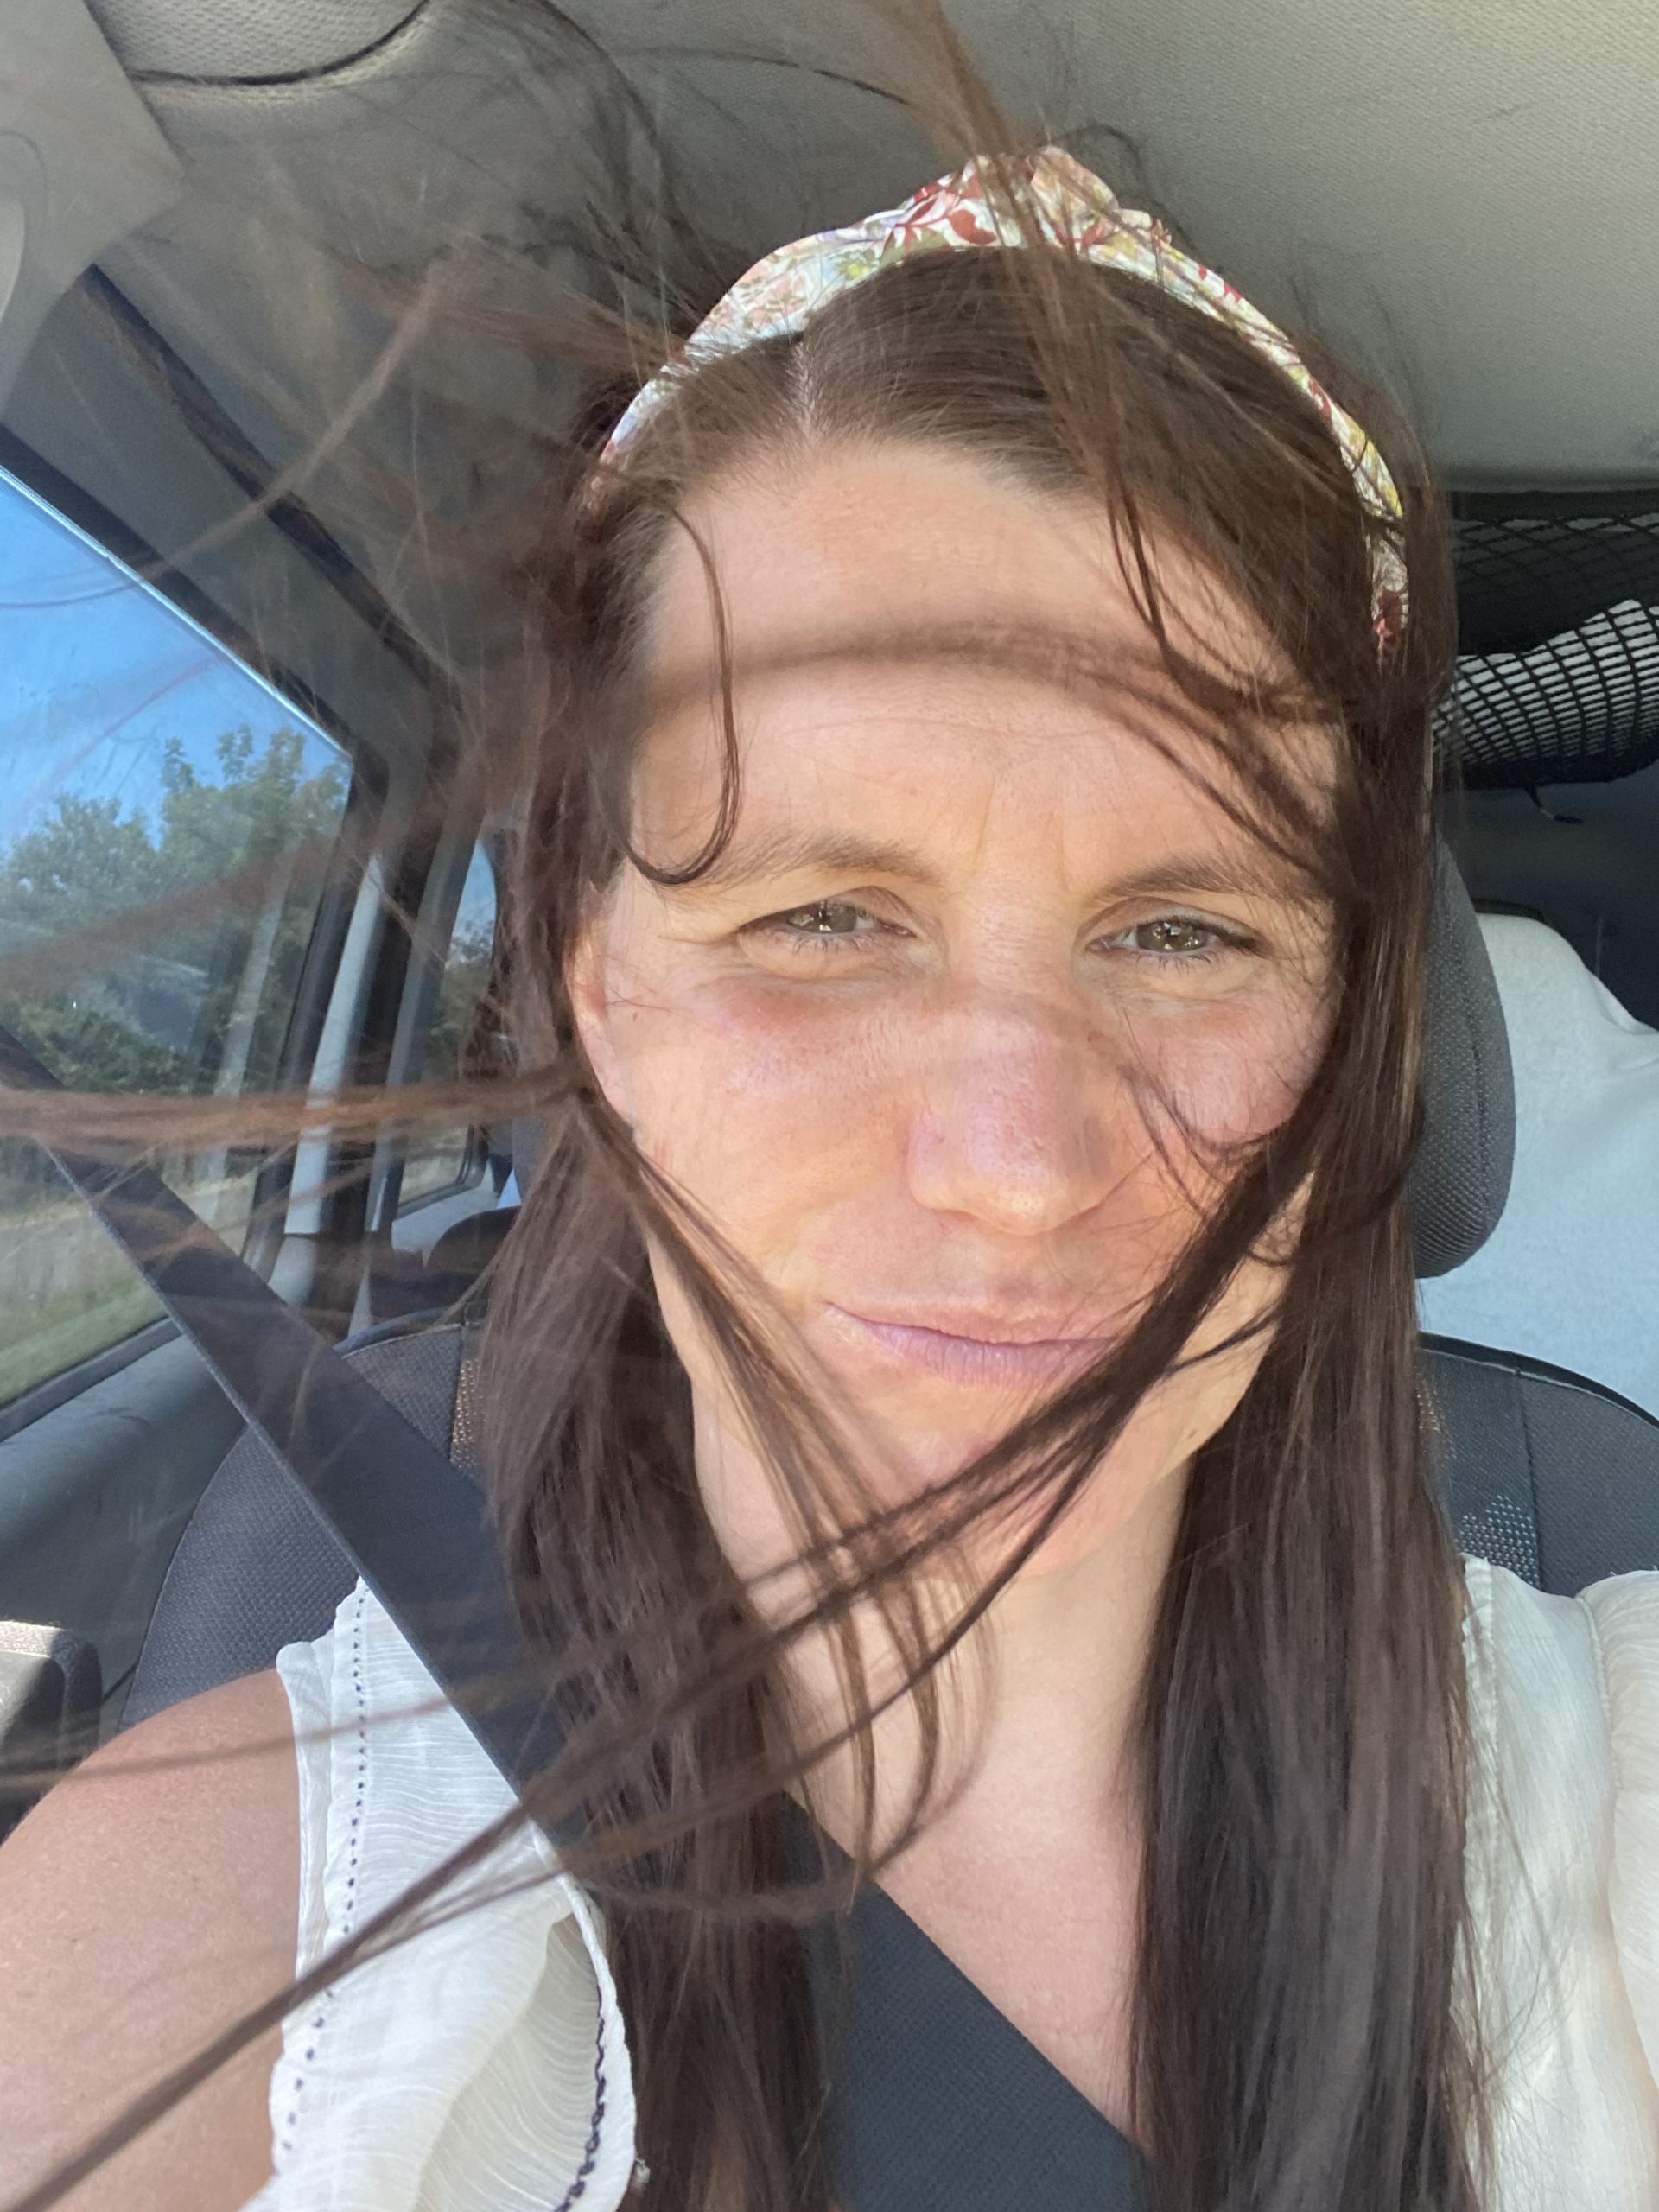 Mein Gesicht im Auto und die Haare werden vom wind verweht 